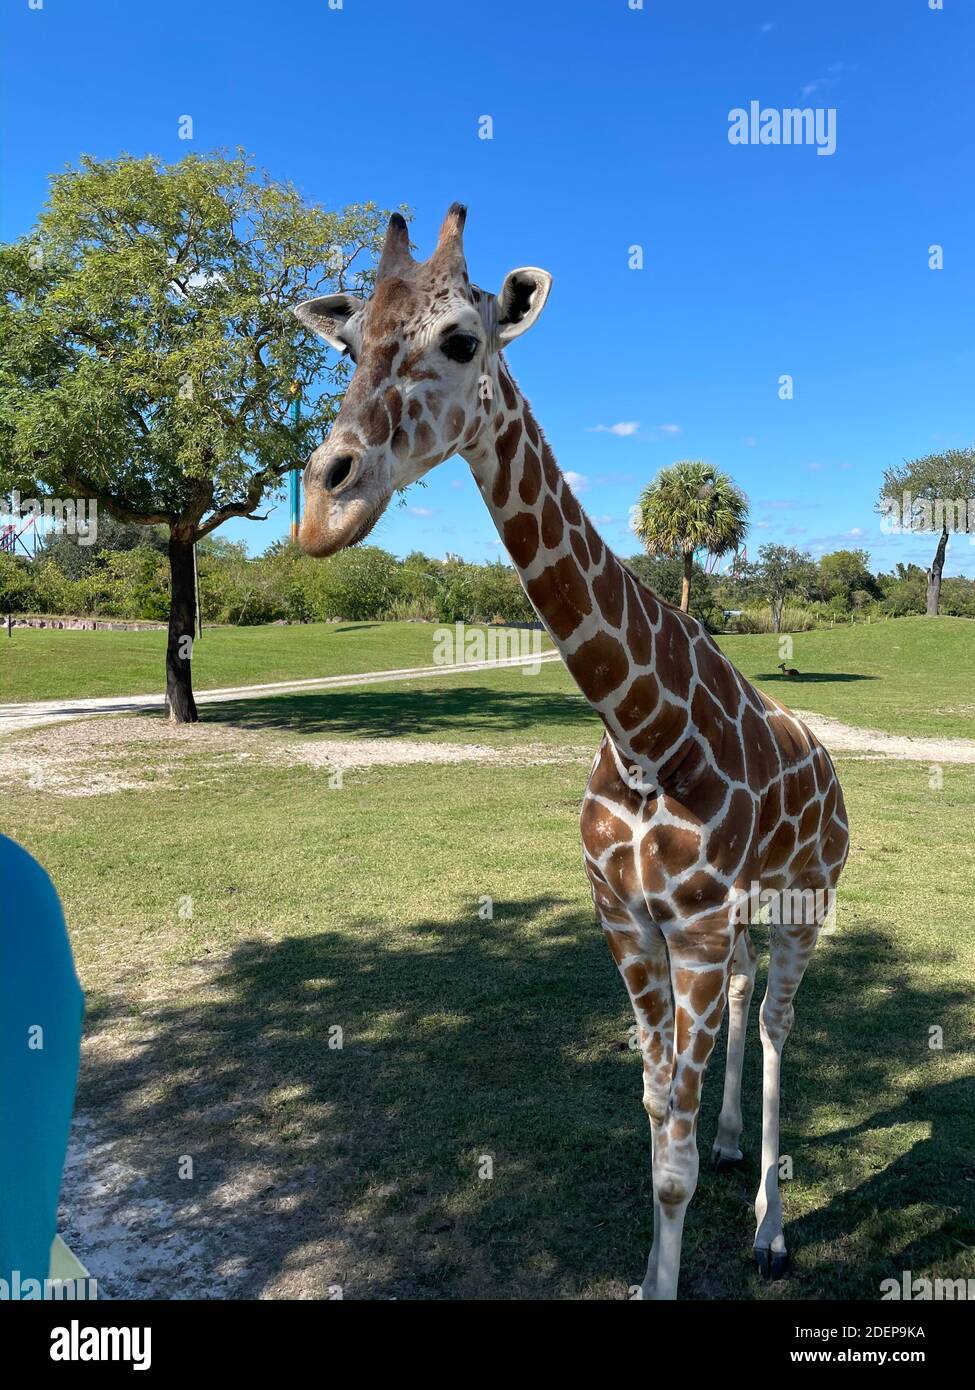 Eine Nahaufnahme einer Giraffe in einem Zoo, der darauf wartet, dass Besucher ihn mit Salat füttern. Stockfoto